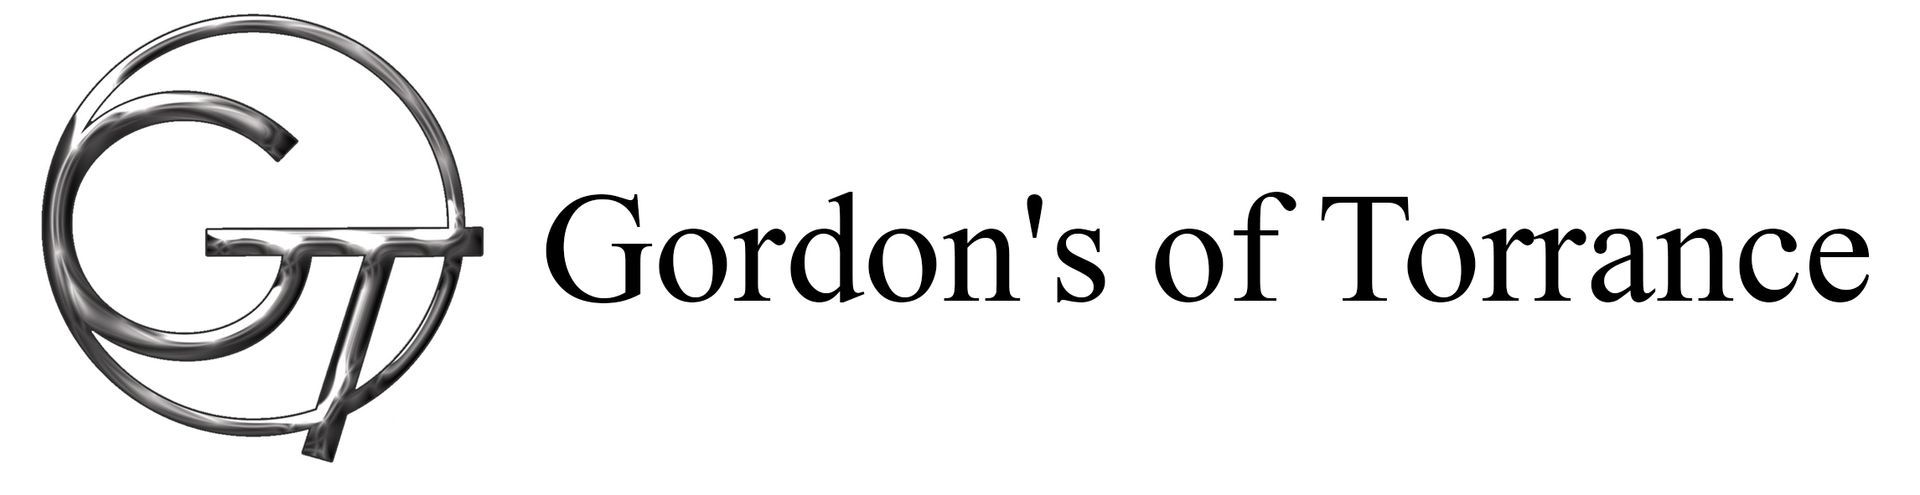 Gordon's of Torrance Logo